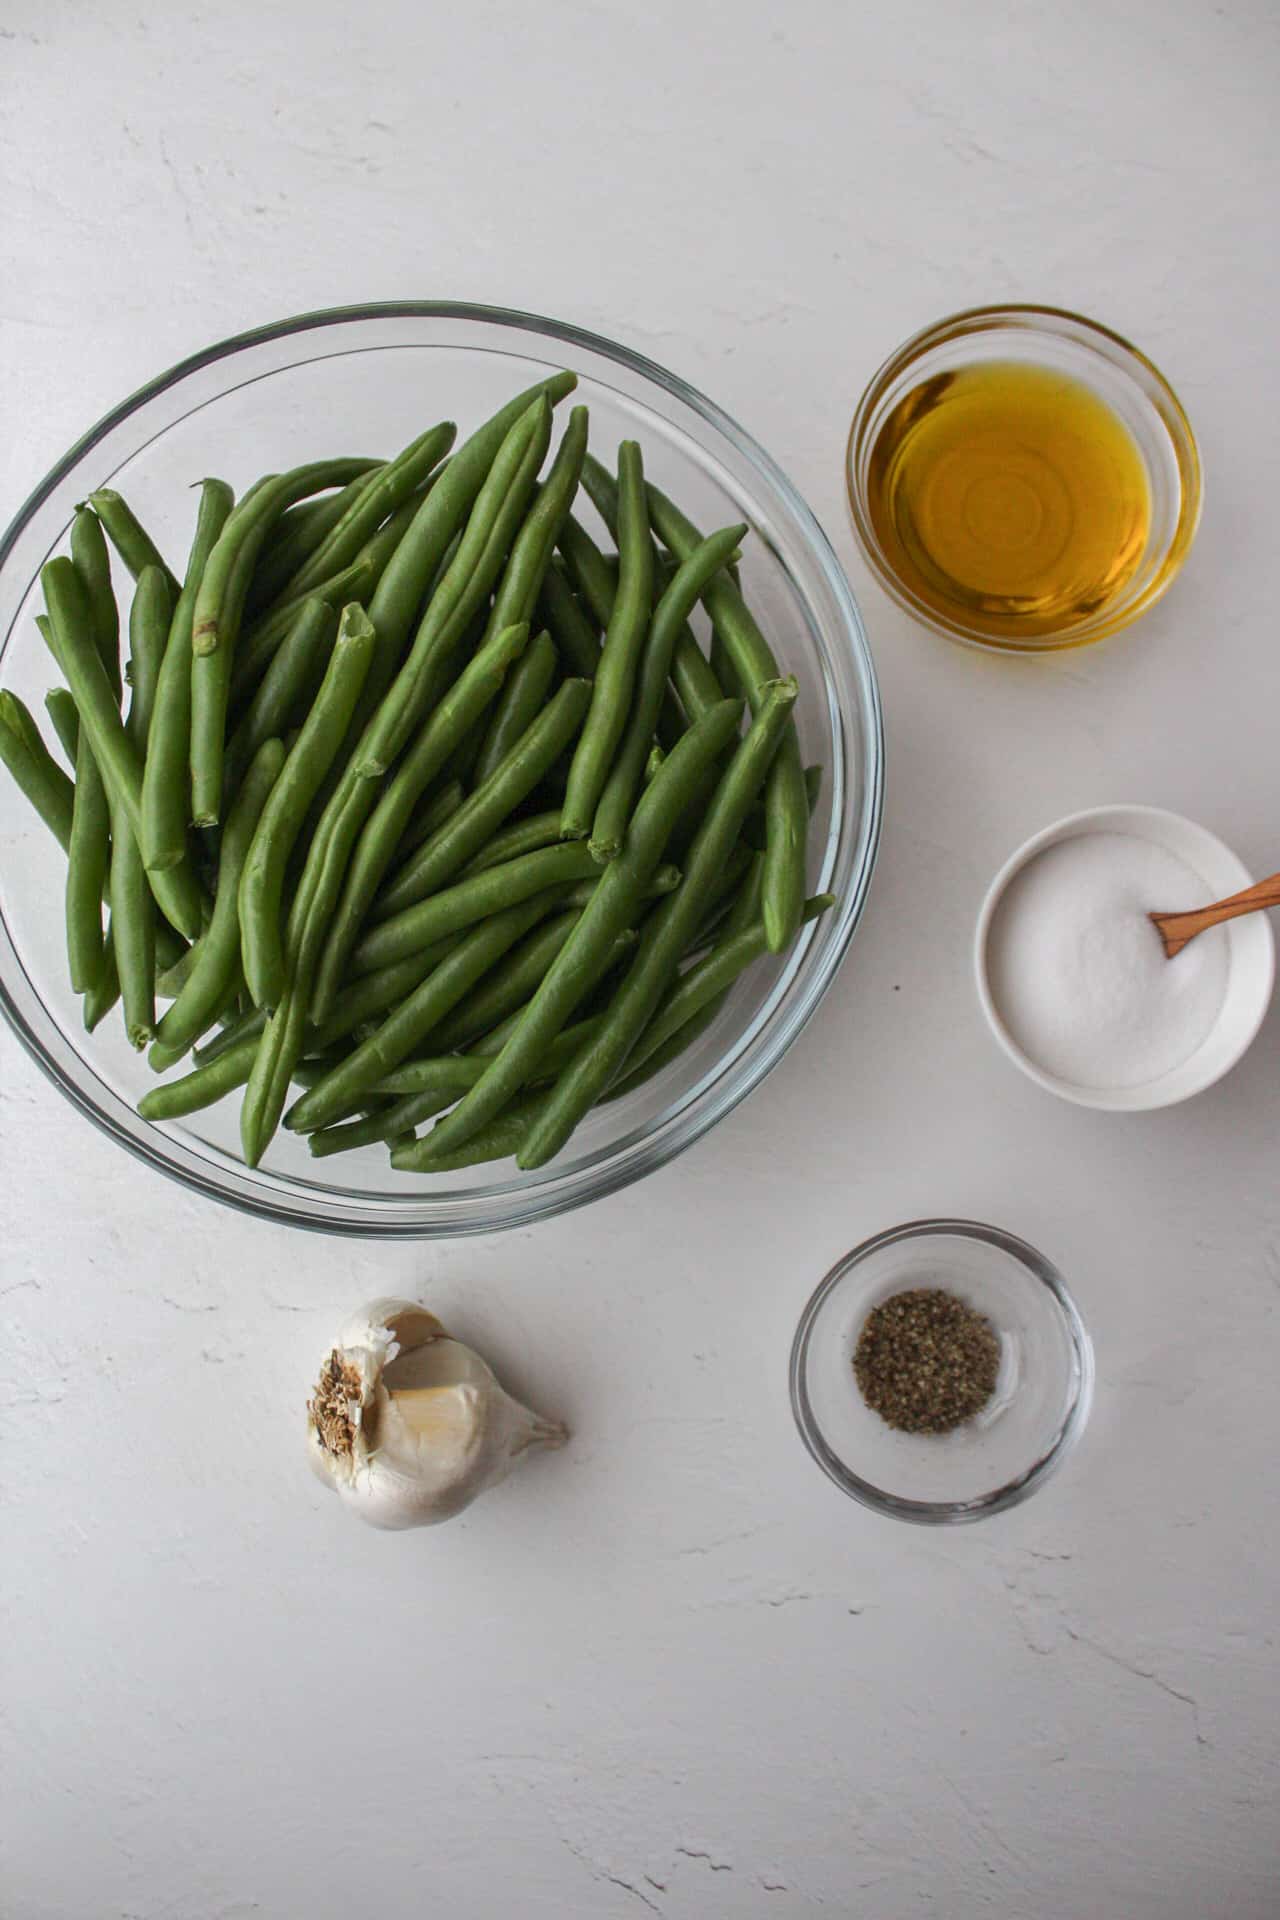 ingredients to make garlic sautéed green beans